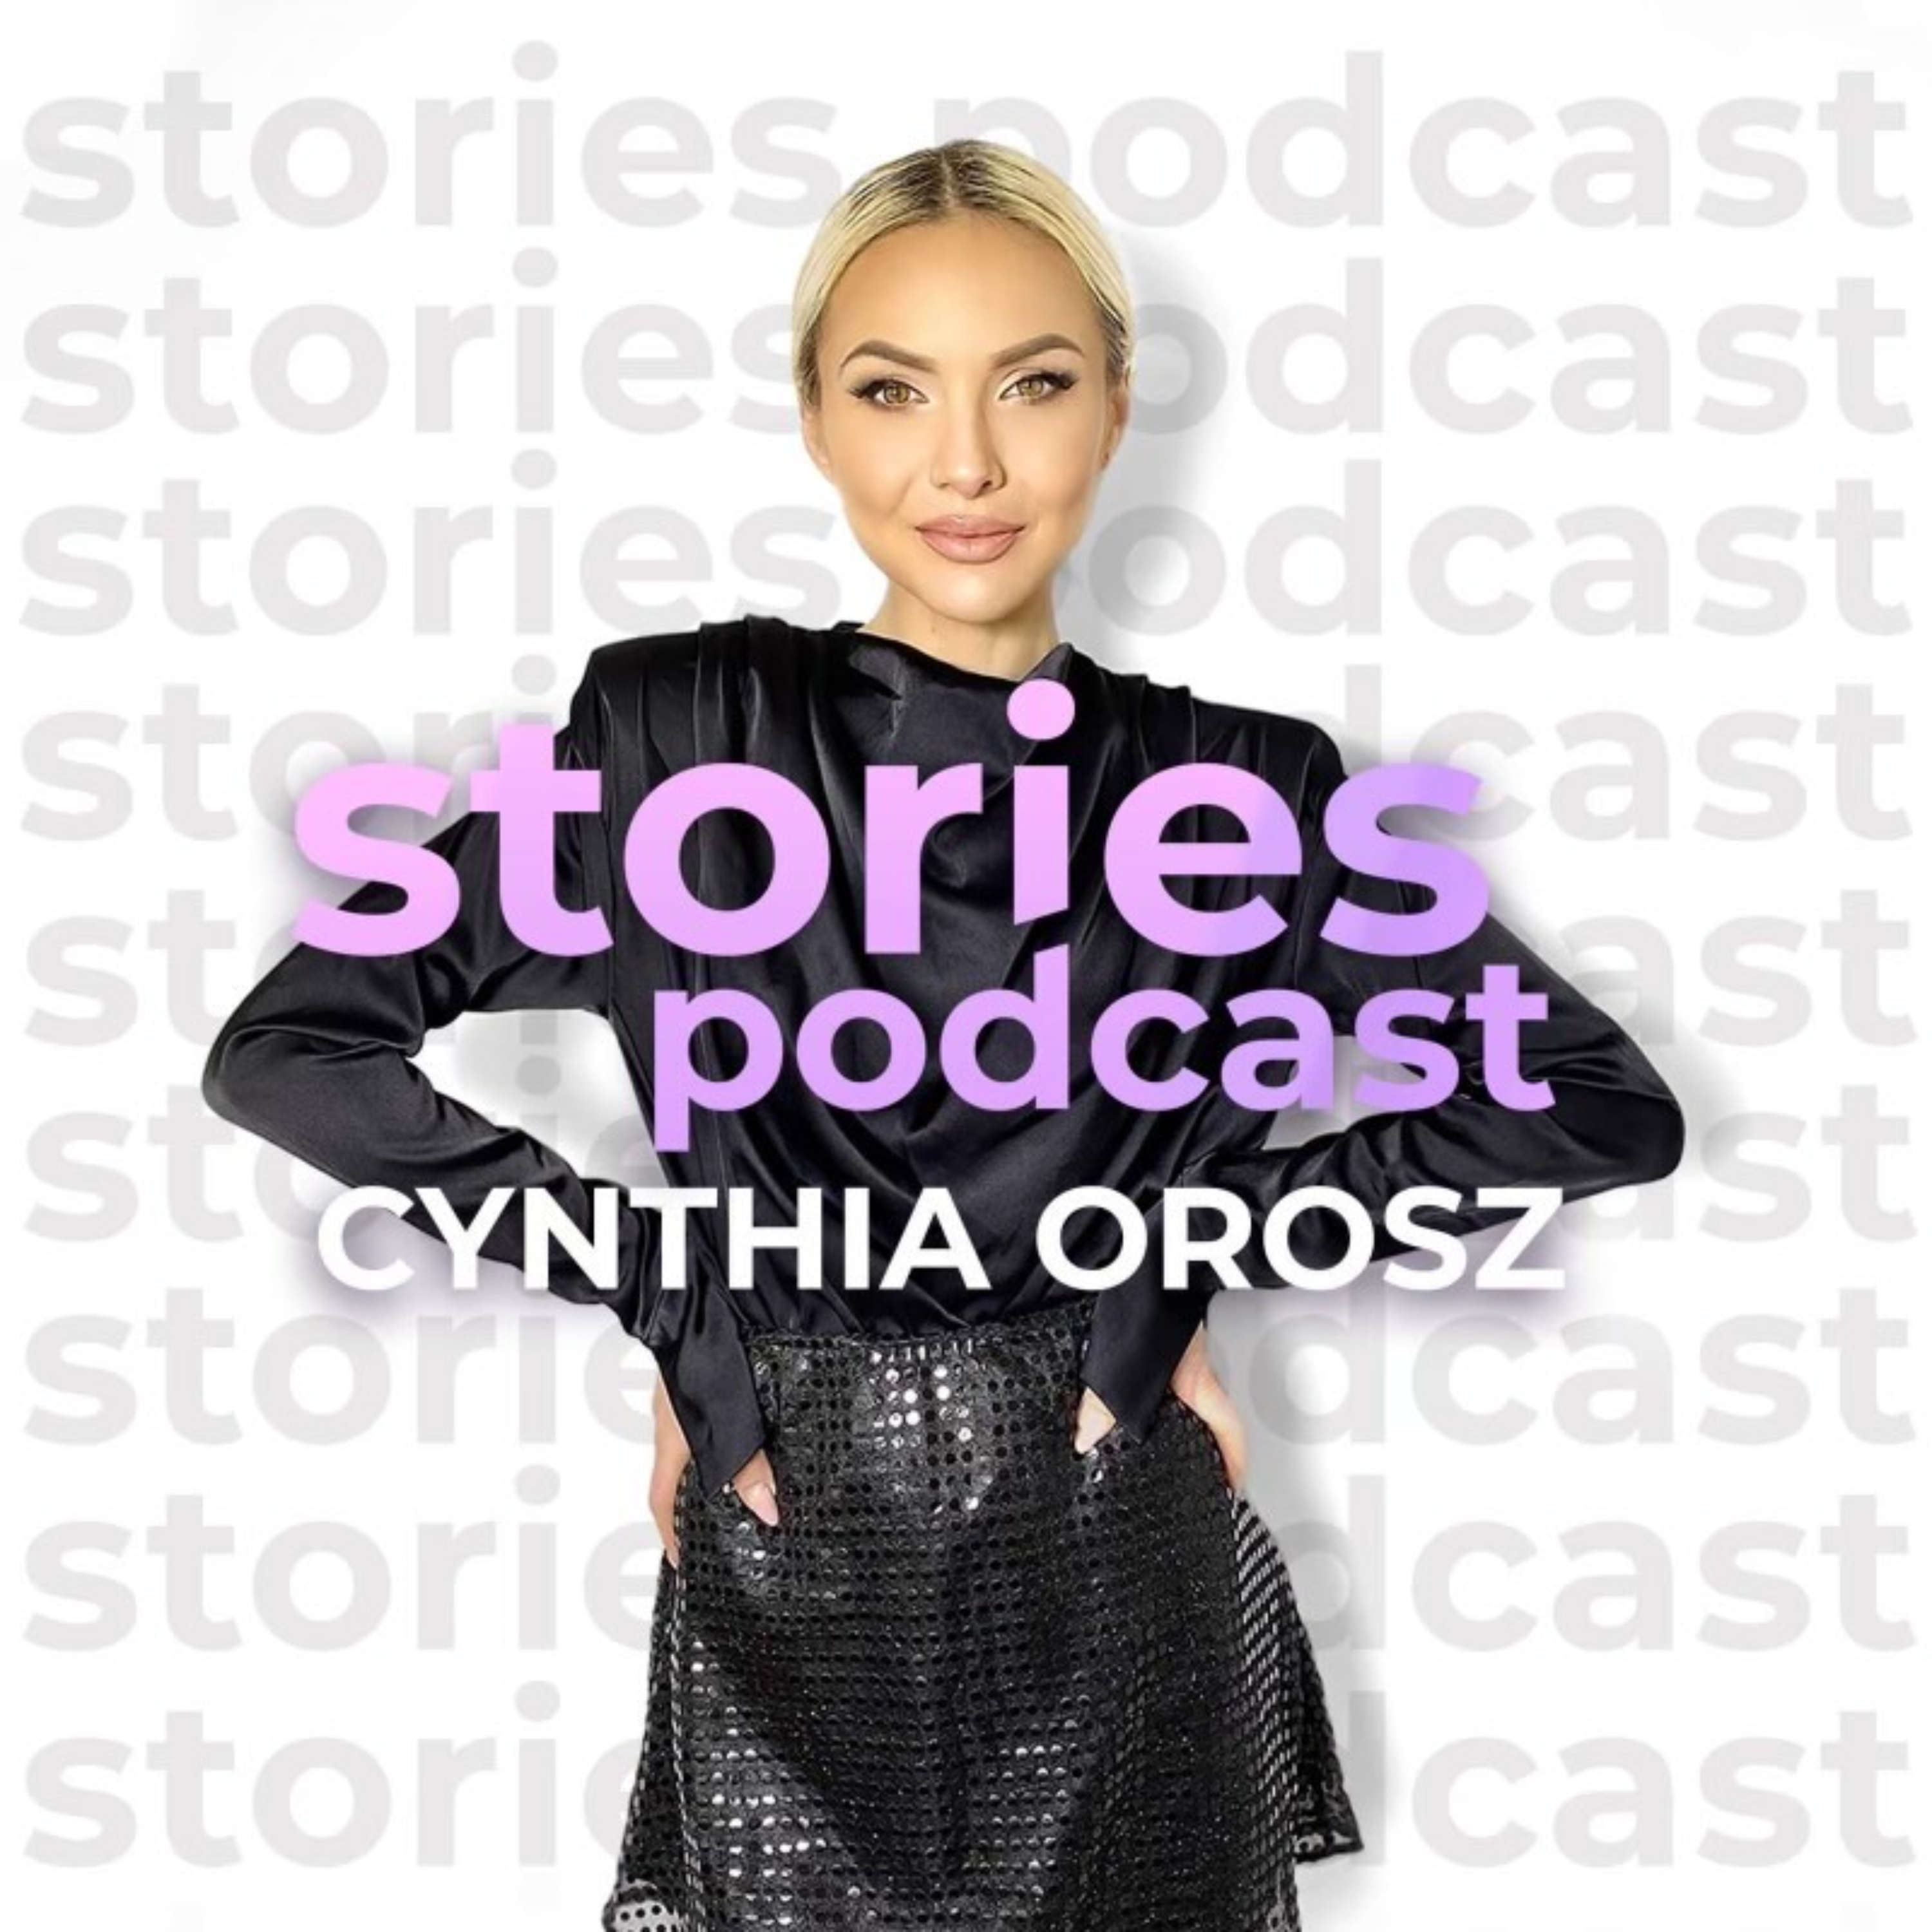  0:39 / 58:20 Stories Podcast I Cynthia Orosz: Anfisa Bulgakova - Szépségről, nőiségről tudatosan. Stories Podcast I Cynthia Orosz